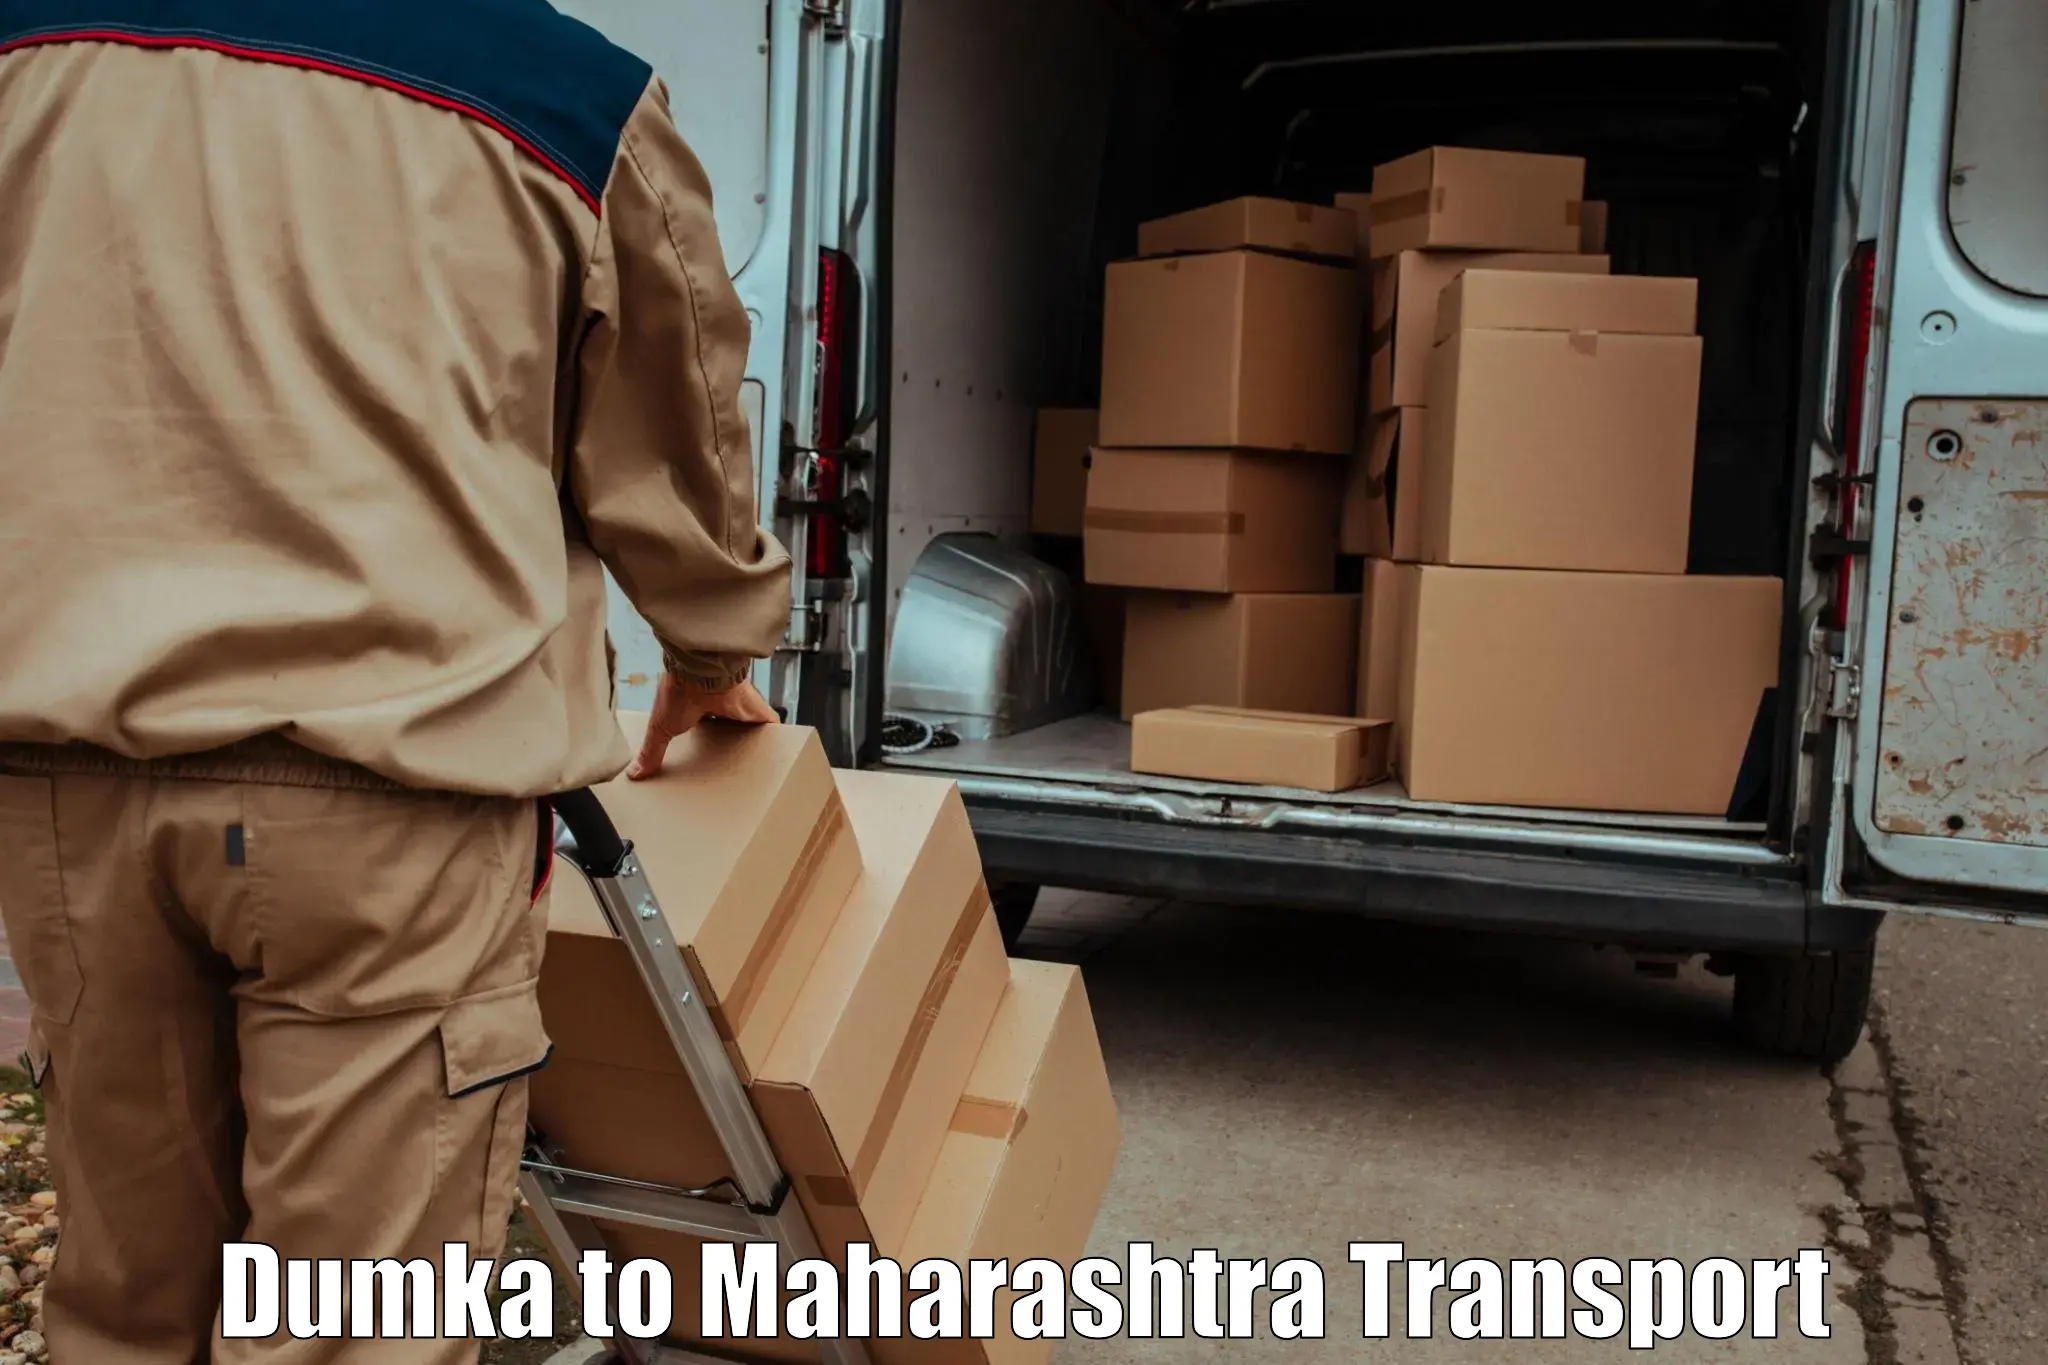 Nearby transport service Dumka to Maharashtra